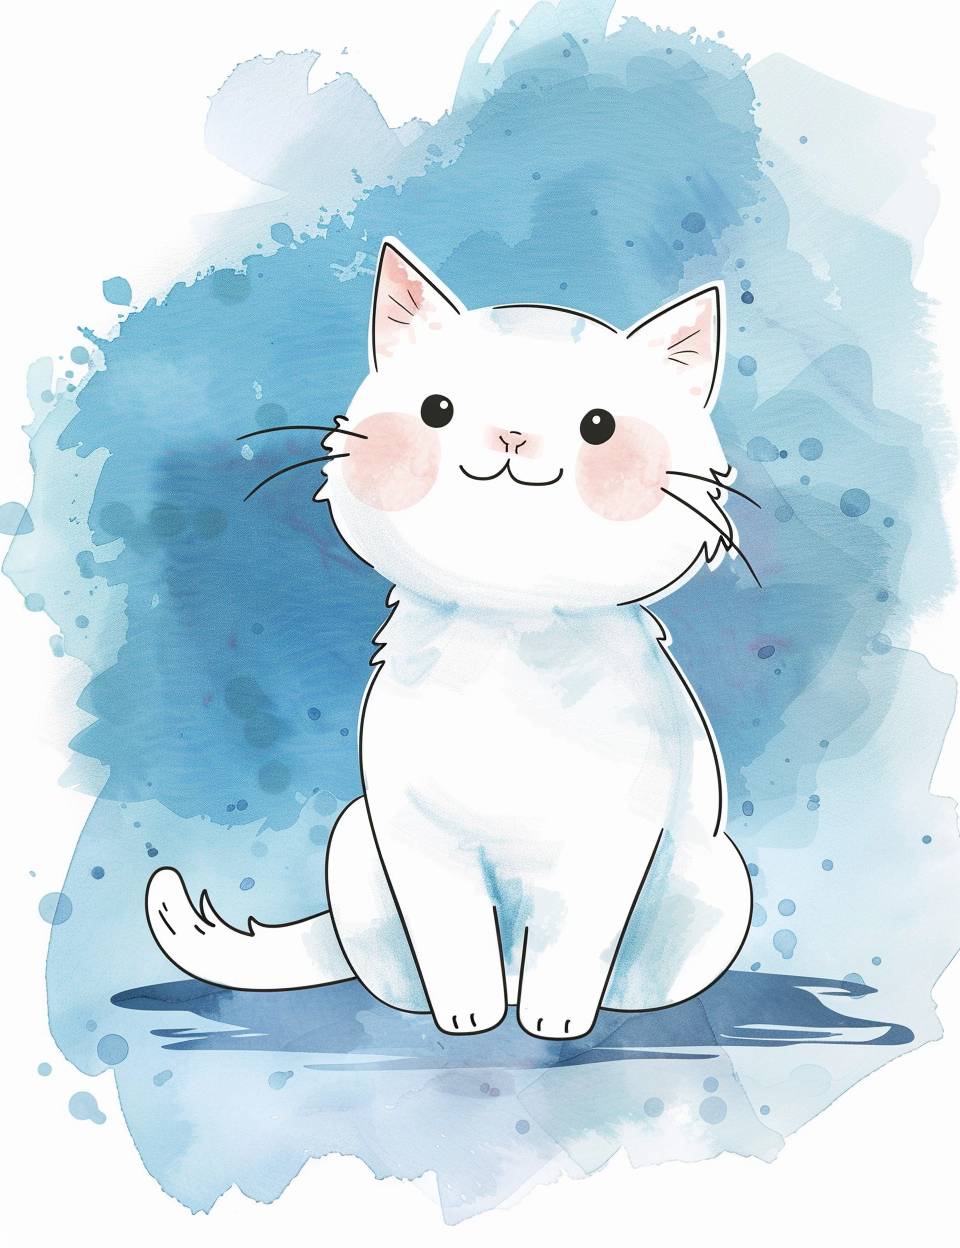 可愛らしいカートゥーンの白い猫、青い水彩の背景のステッカーで、アンリ・マティスと竹政良のスタイルでシンプルなフラットなイラストです。